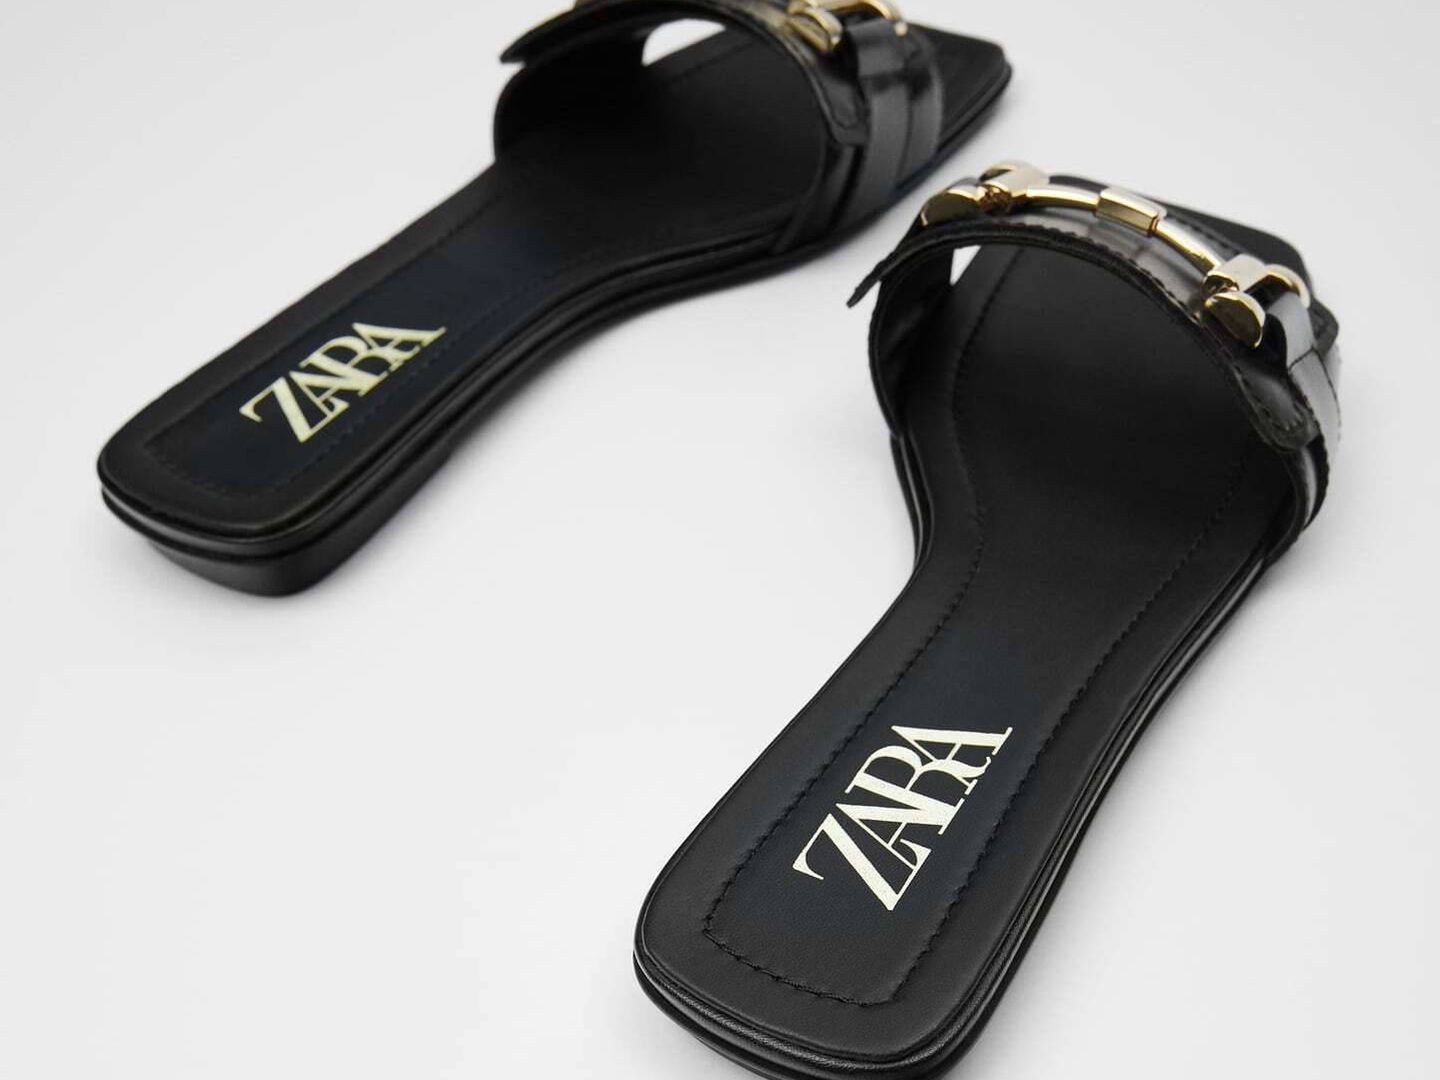 Sandalias planas de Zara tipo mocasín. (Cortesía)